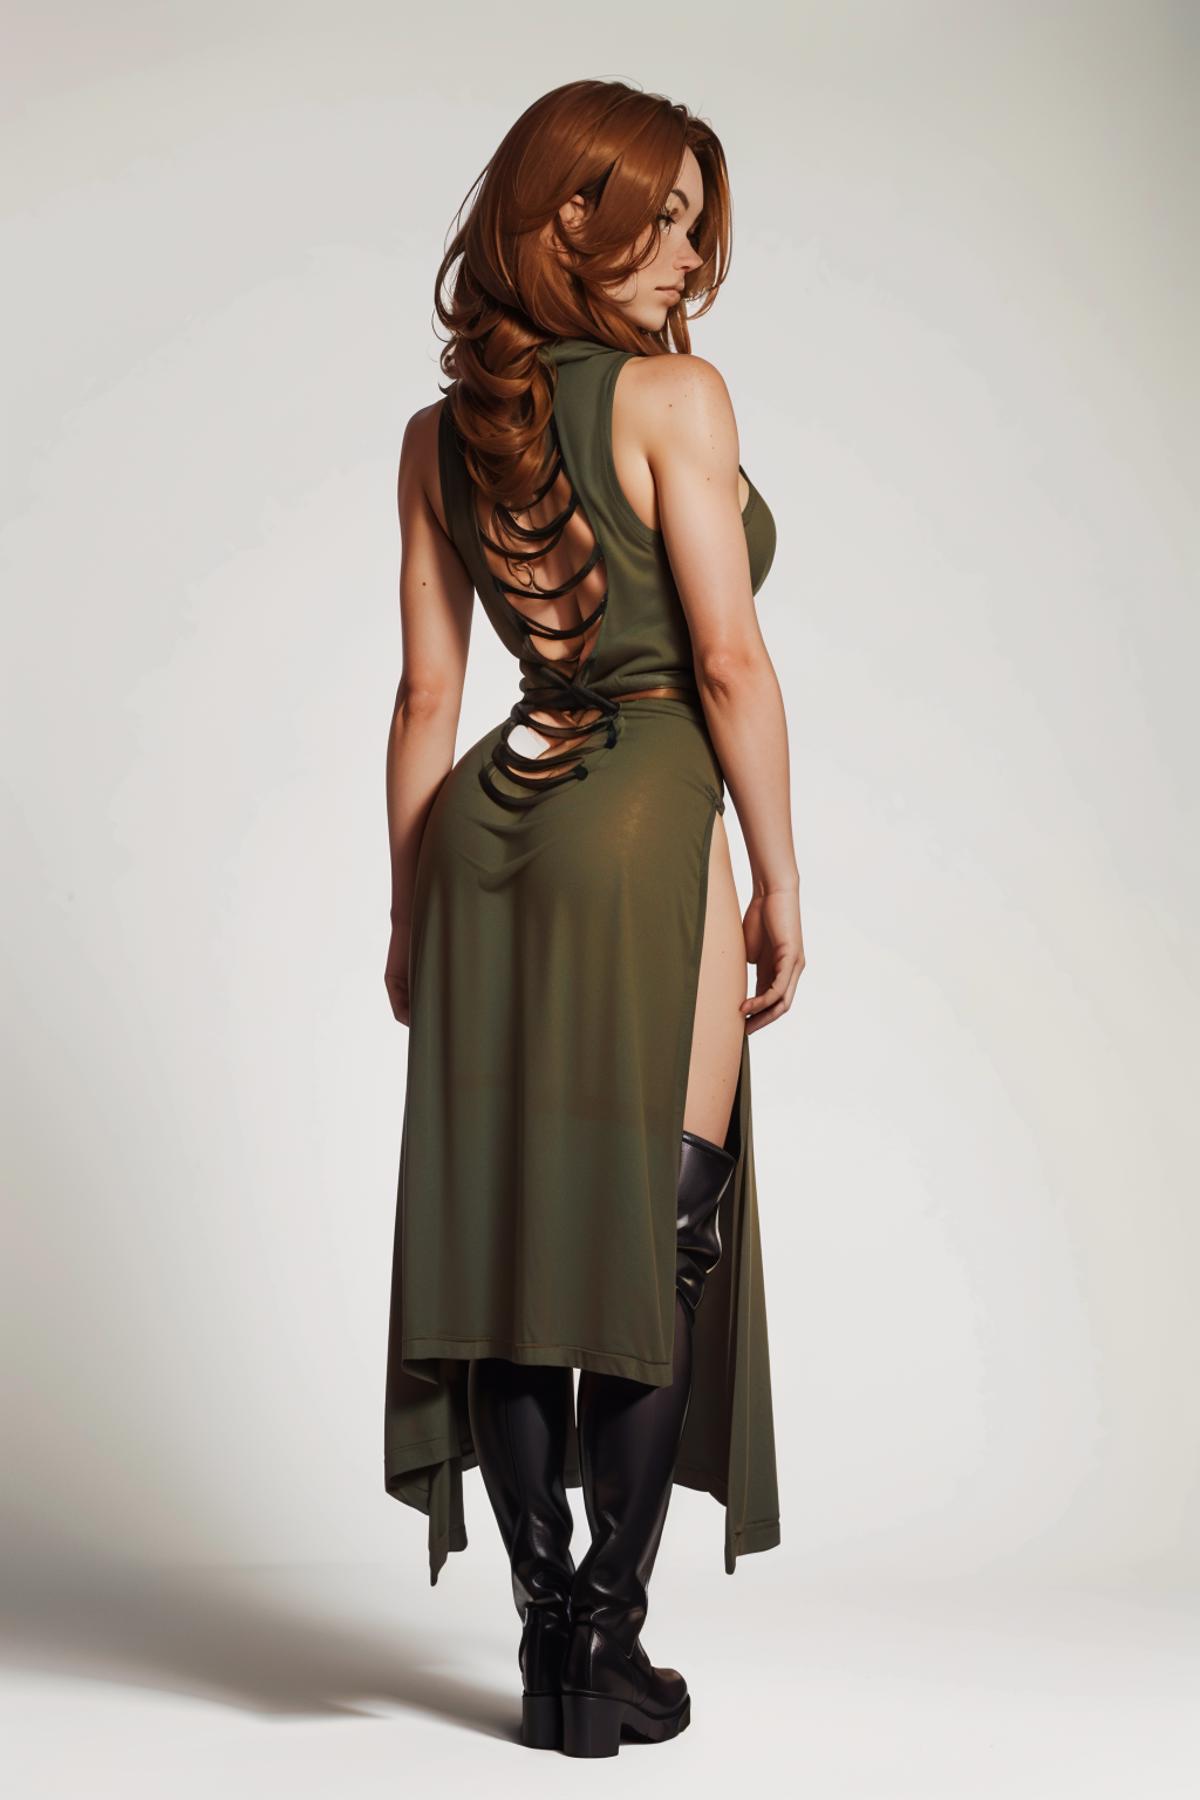 Sheer Hooded Dress - v1.0 | Stable Diffusion LoRA | Civitai